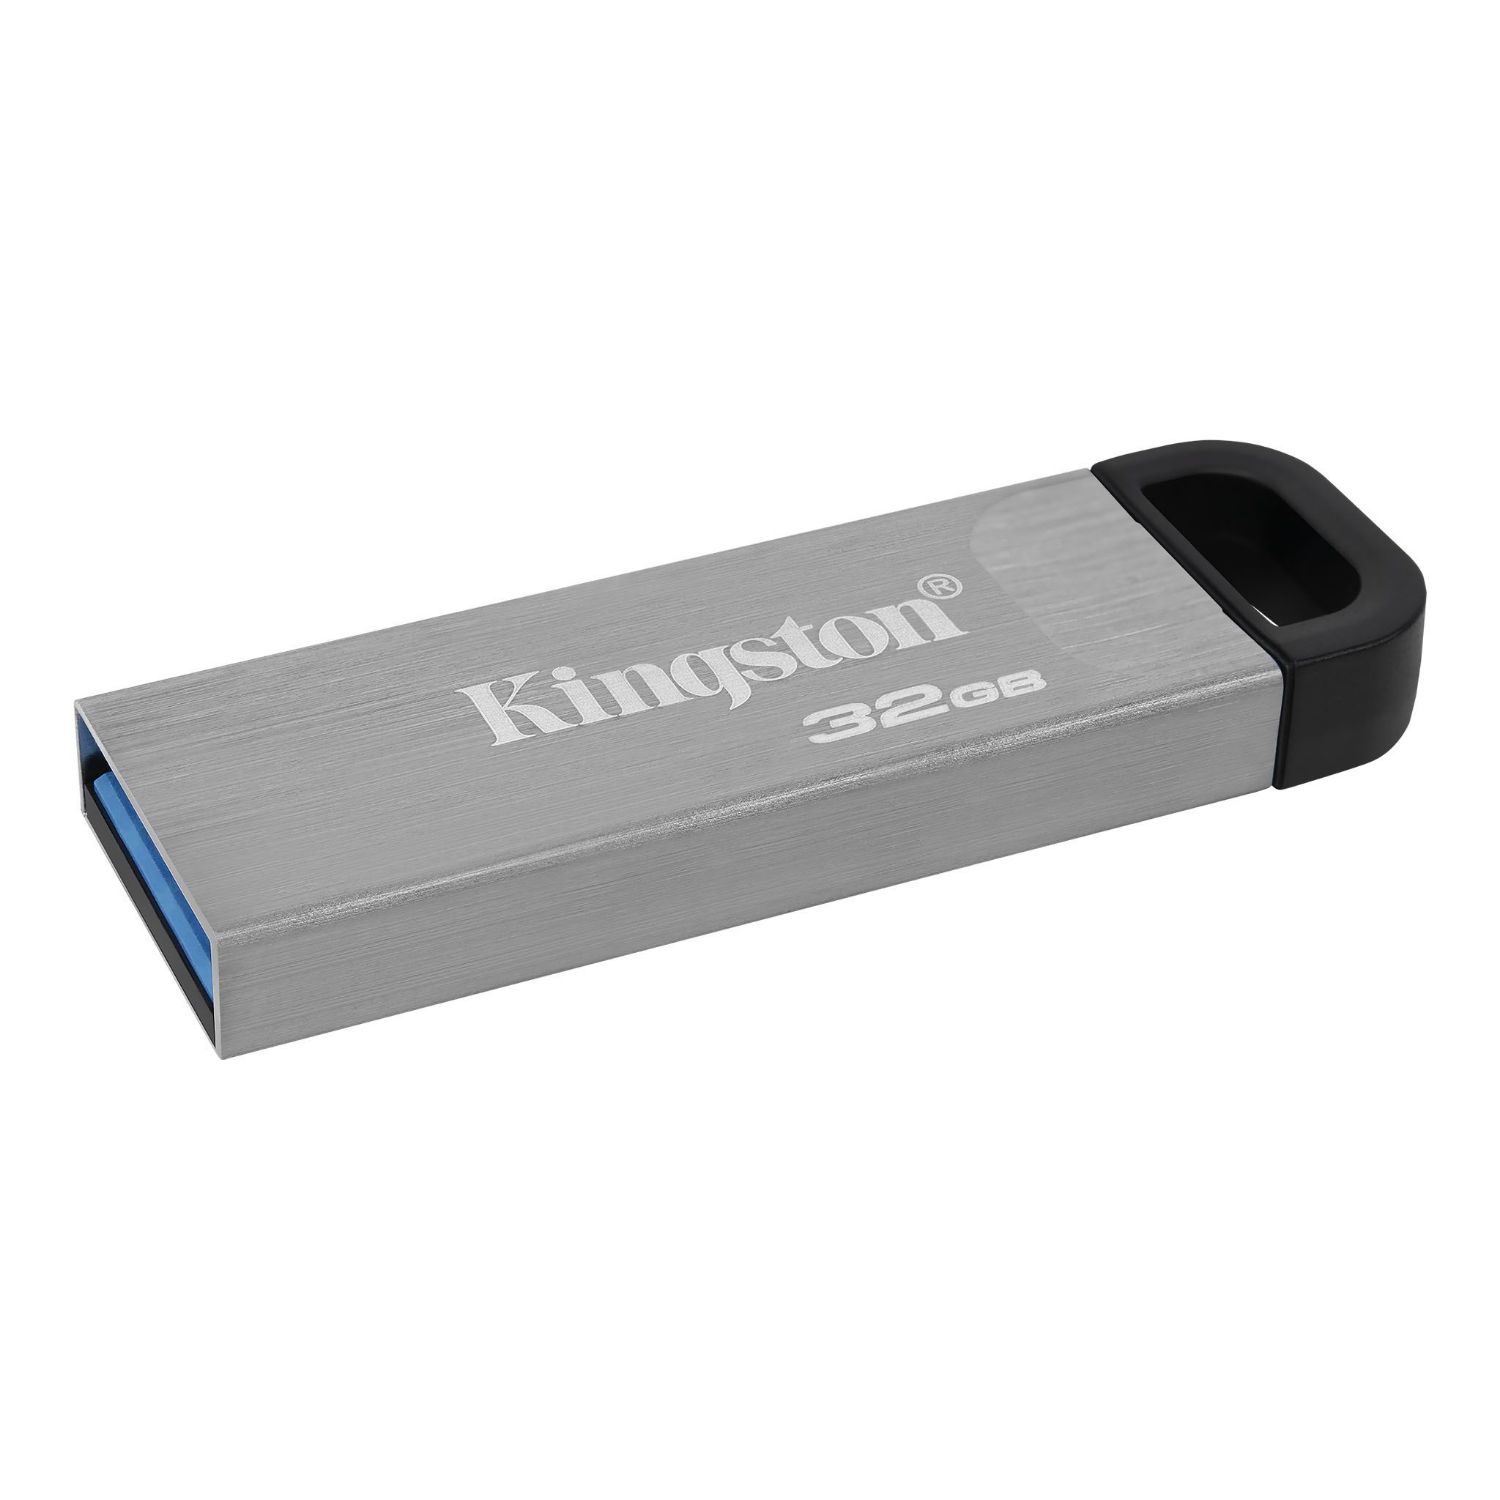 DTKN/32GB - Pendrive Kingston DataTraveler Kyson Metal 32Gb USB-A 3.0 Lectura 200 Mb/s Llavero Plata (DTKN/32GB)